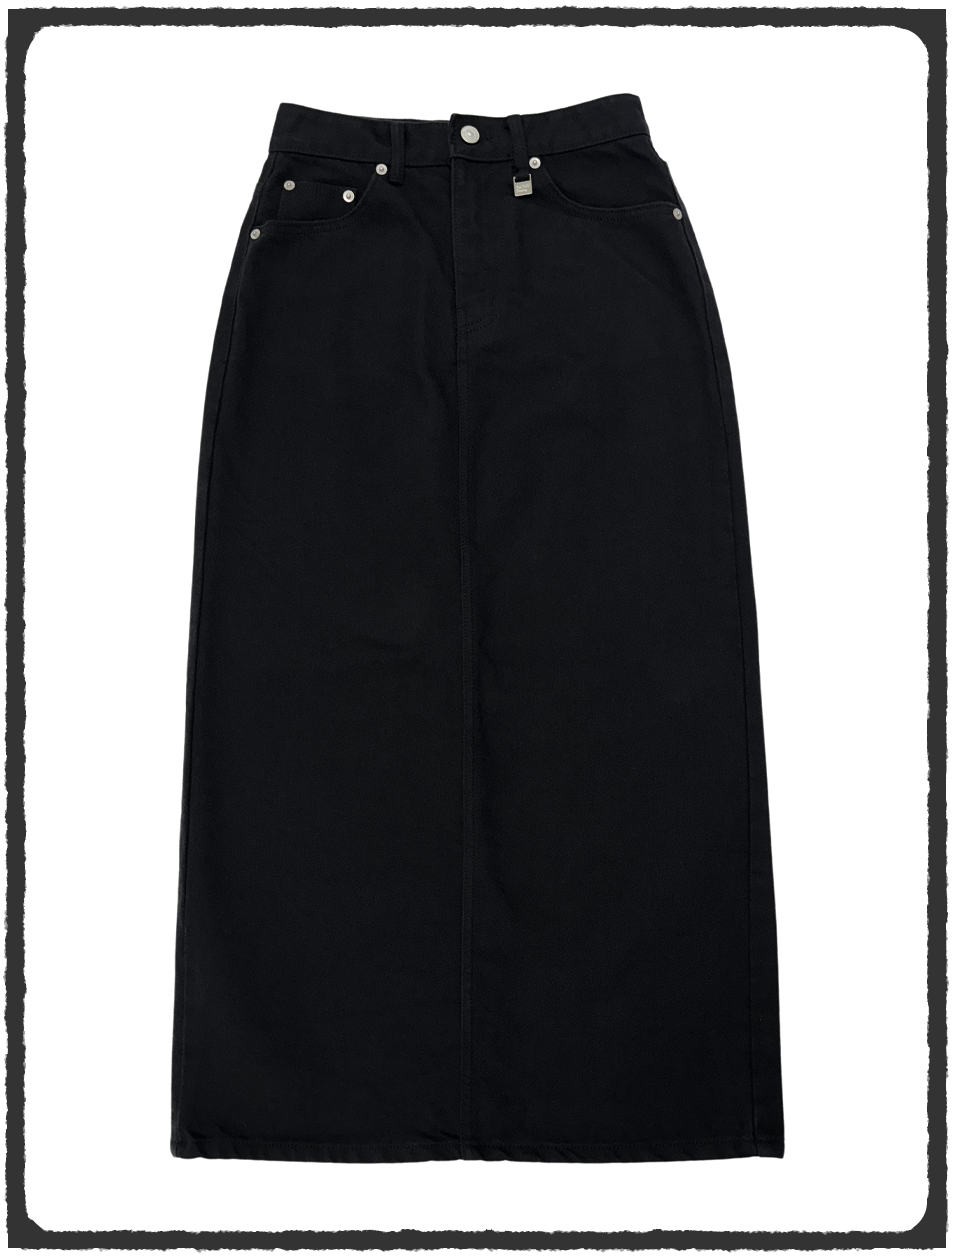 High Waist Long Skirt - Black Cotton